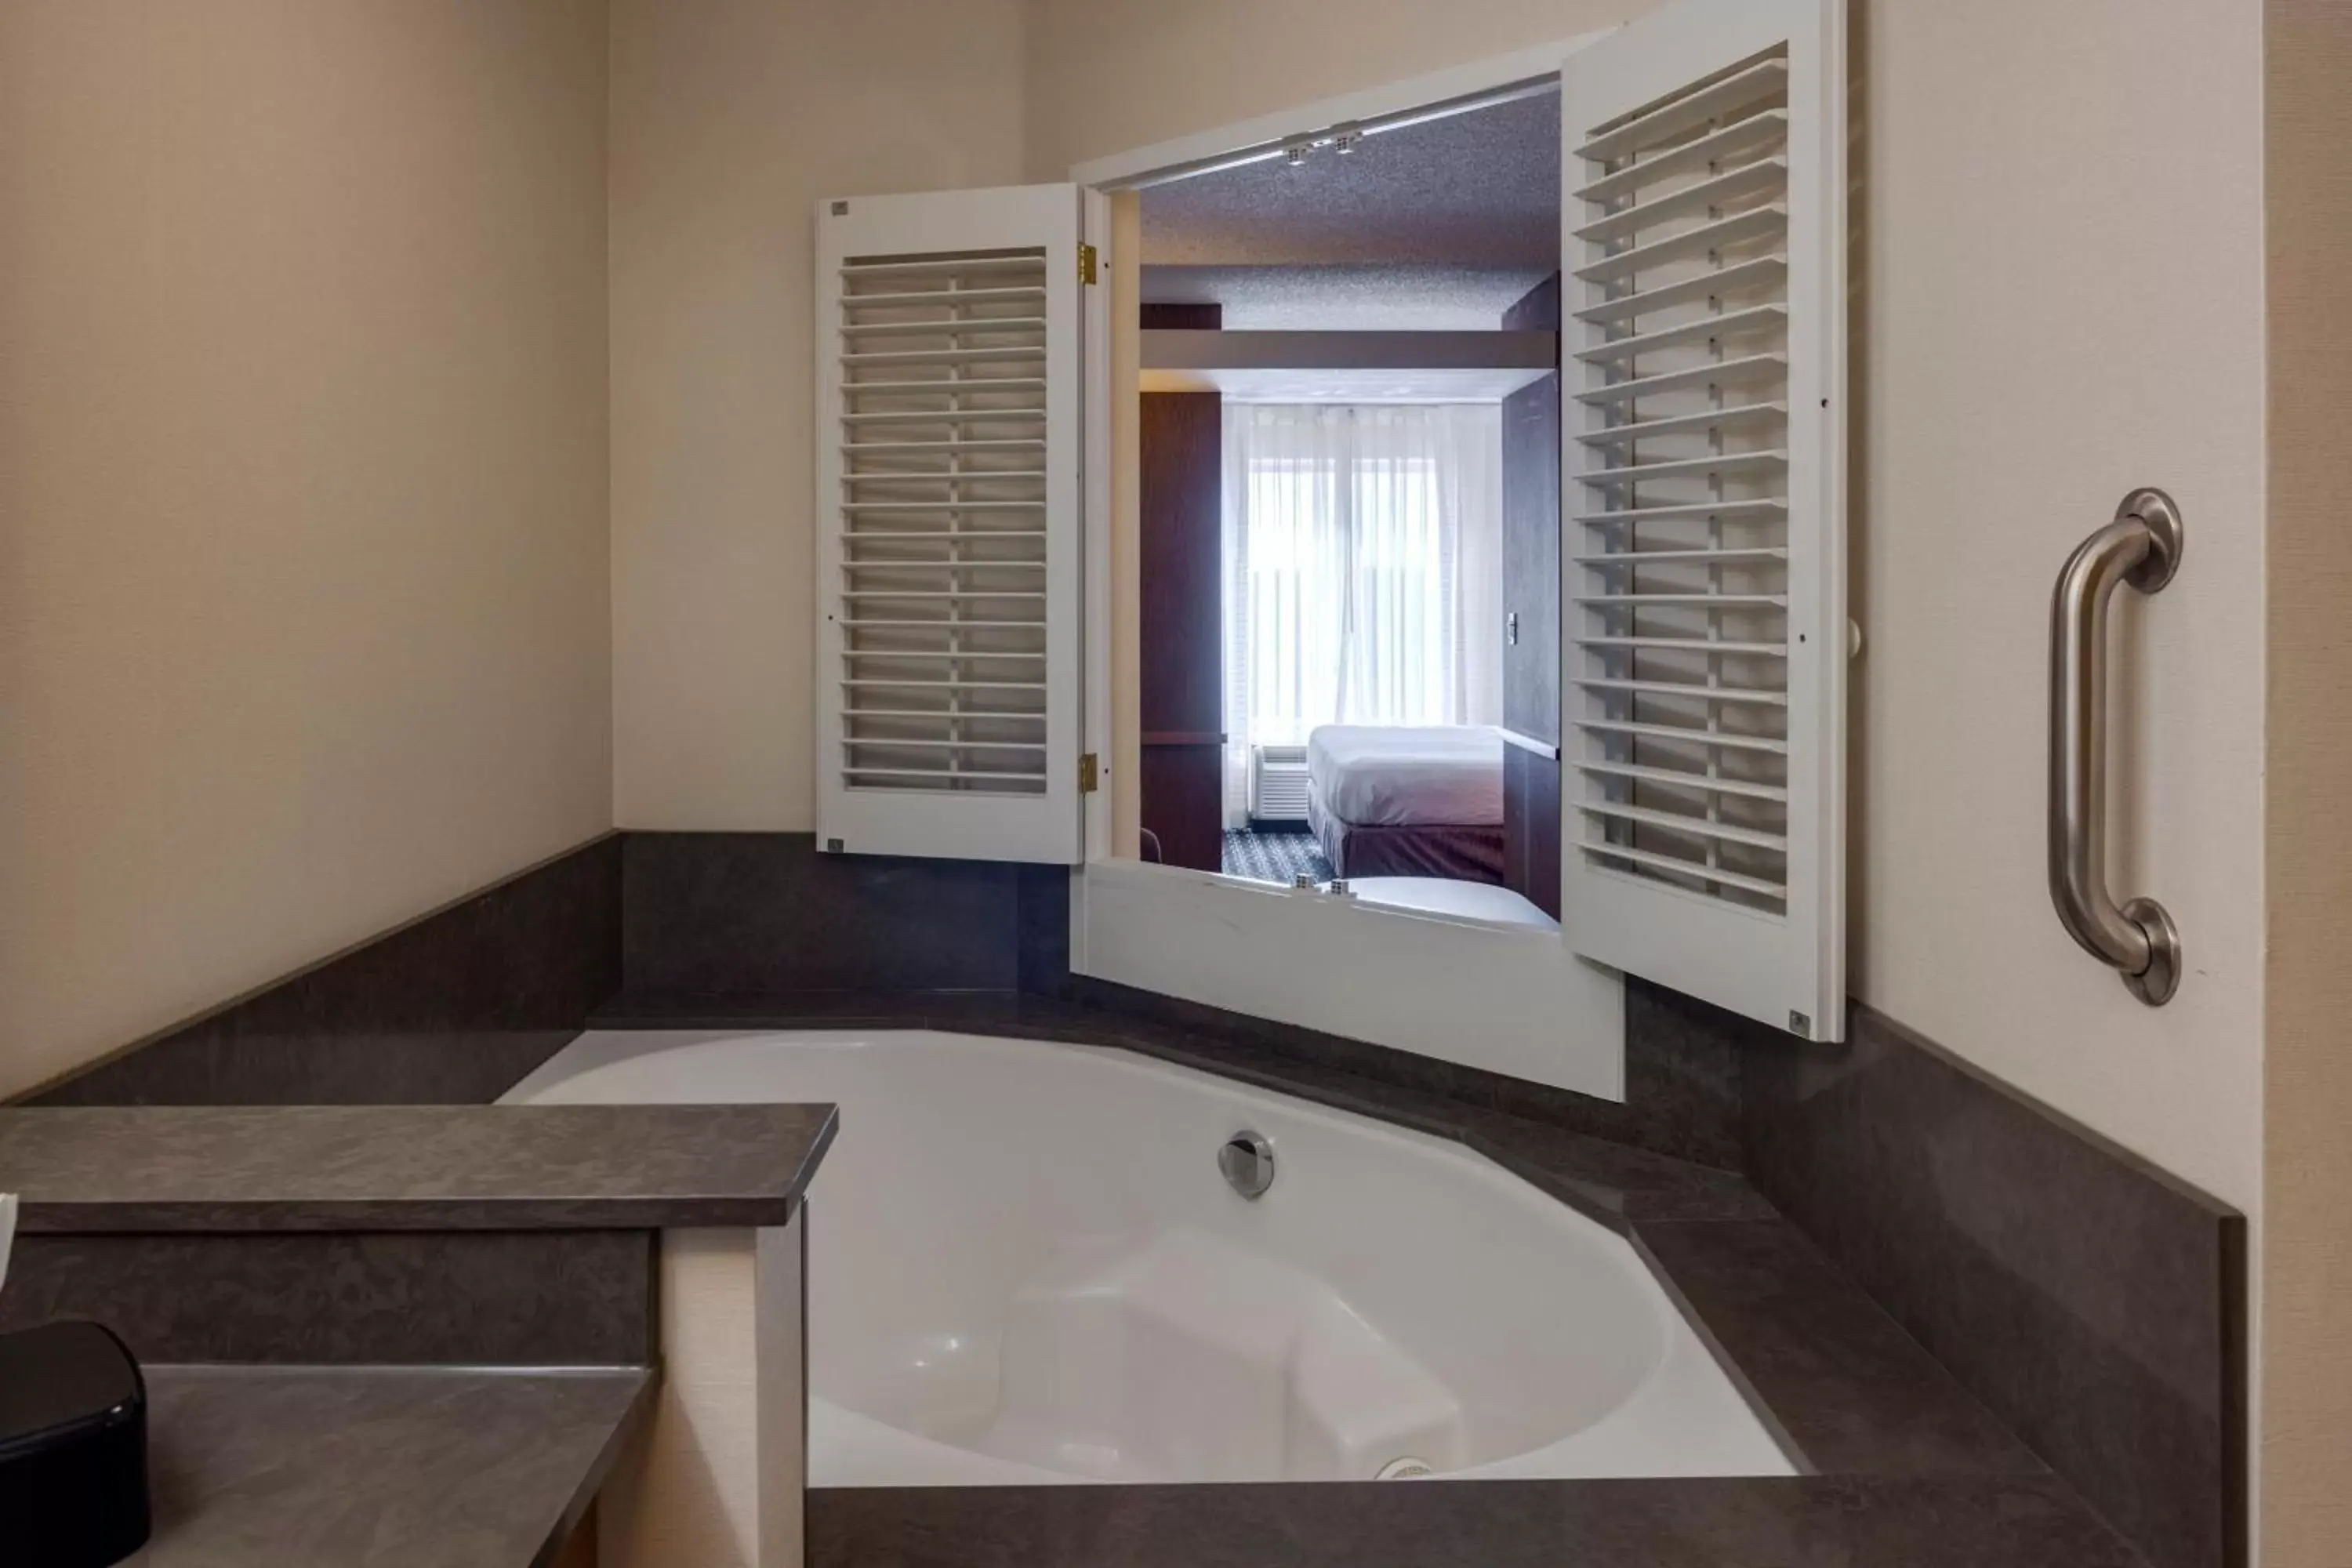 Photo of the whole room, Bathroom in Fairfield Inn & Suites by Marriott Edmond